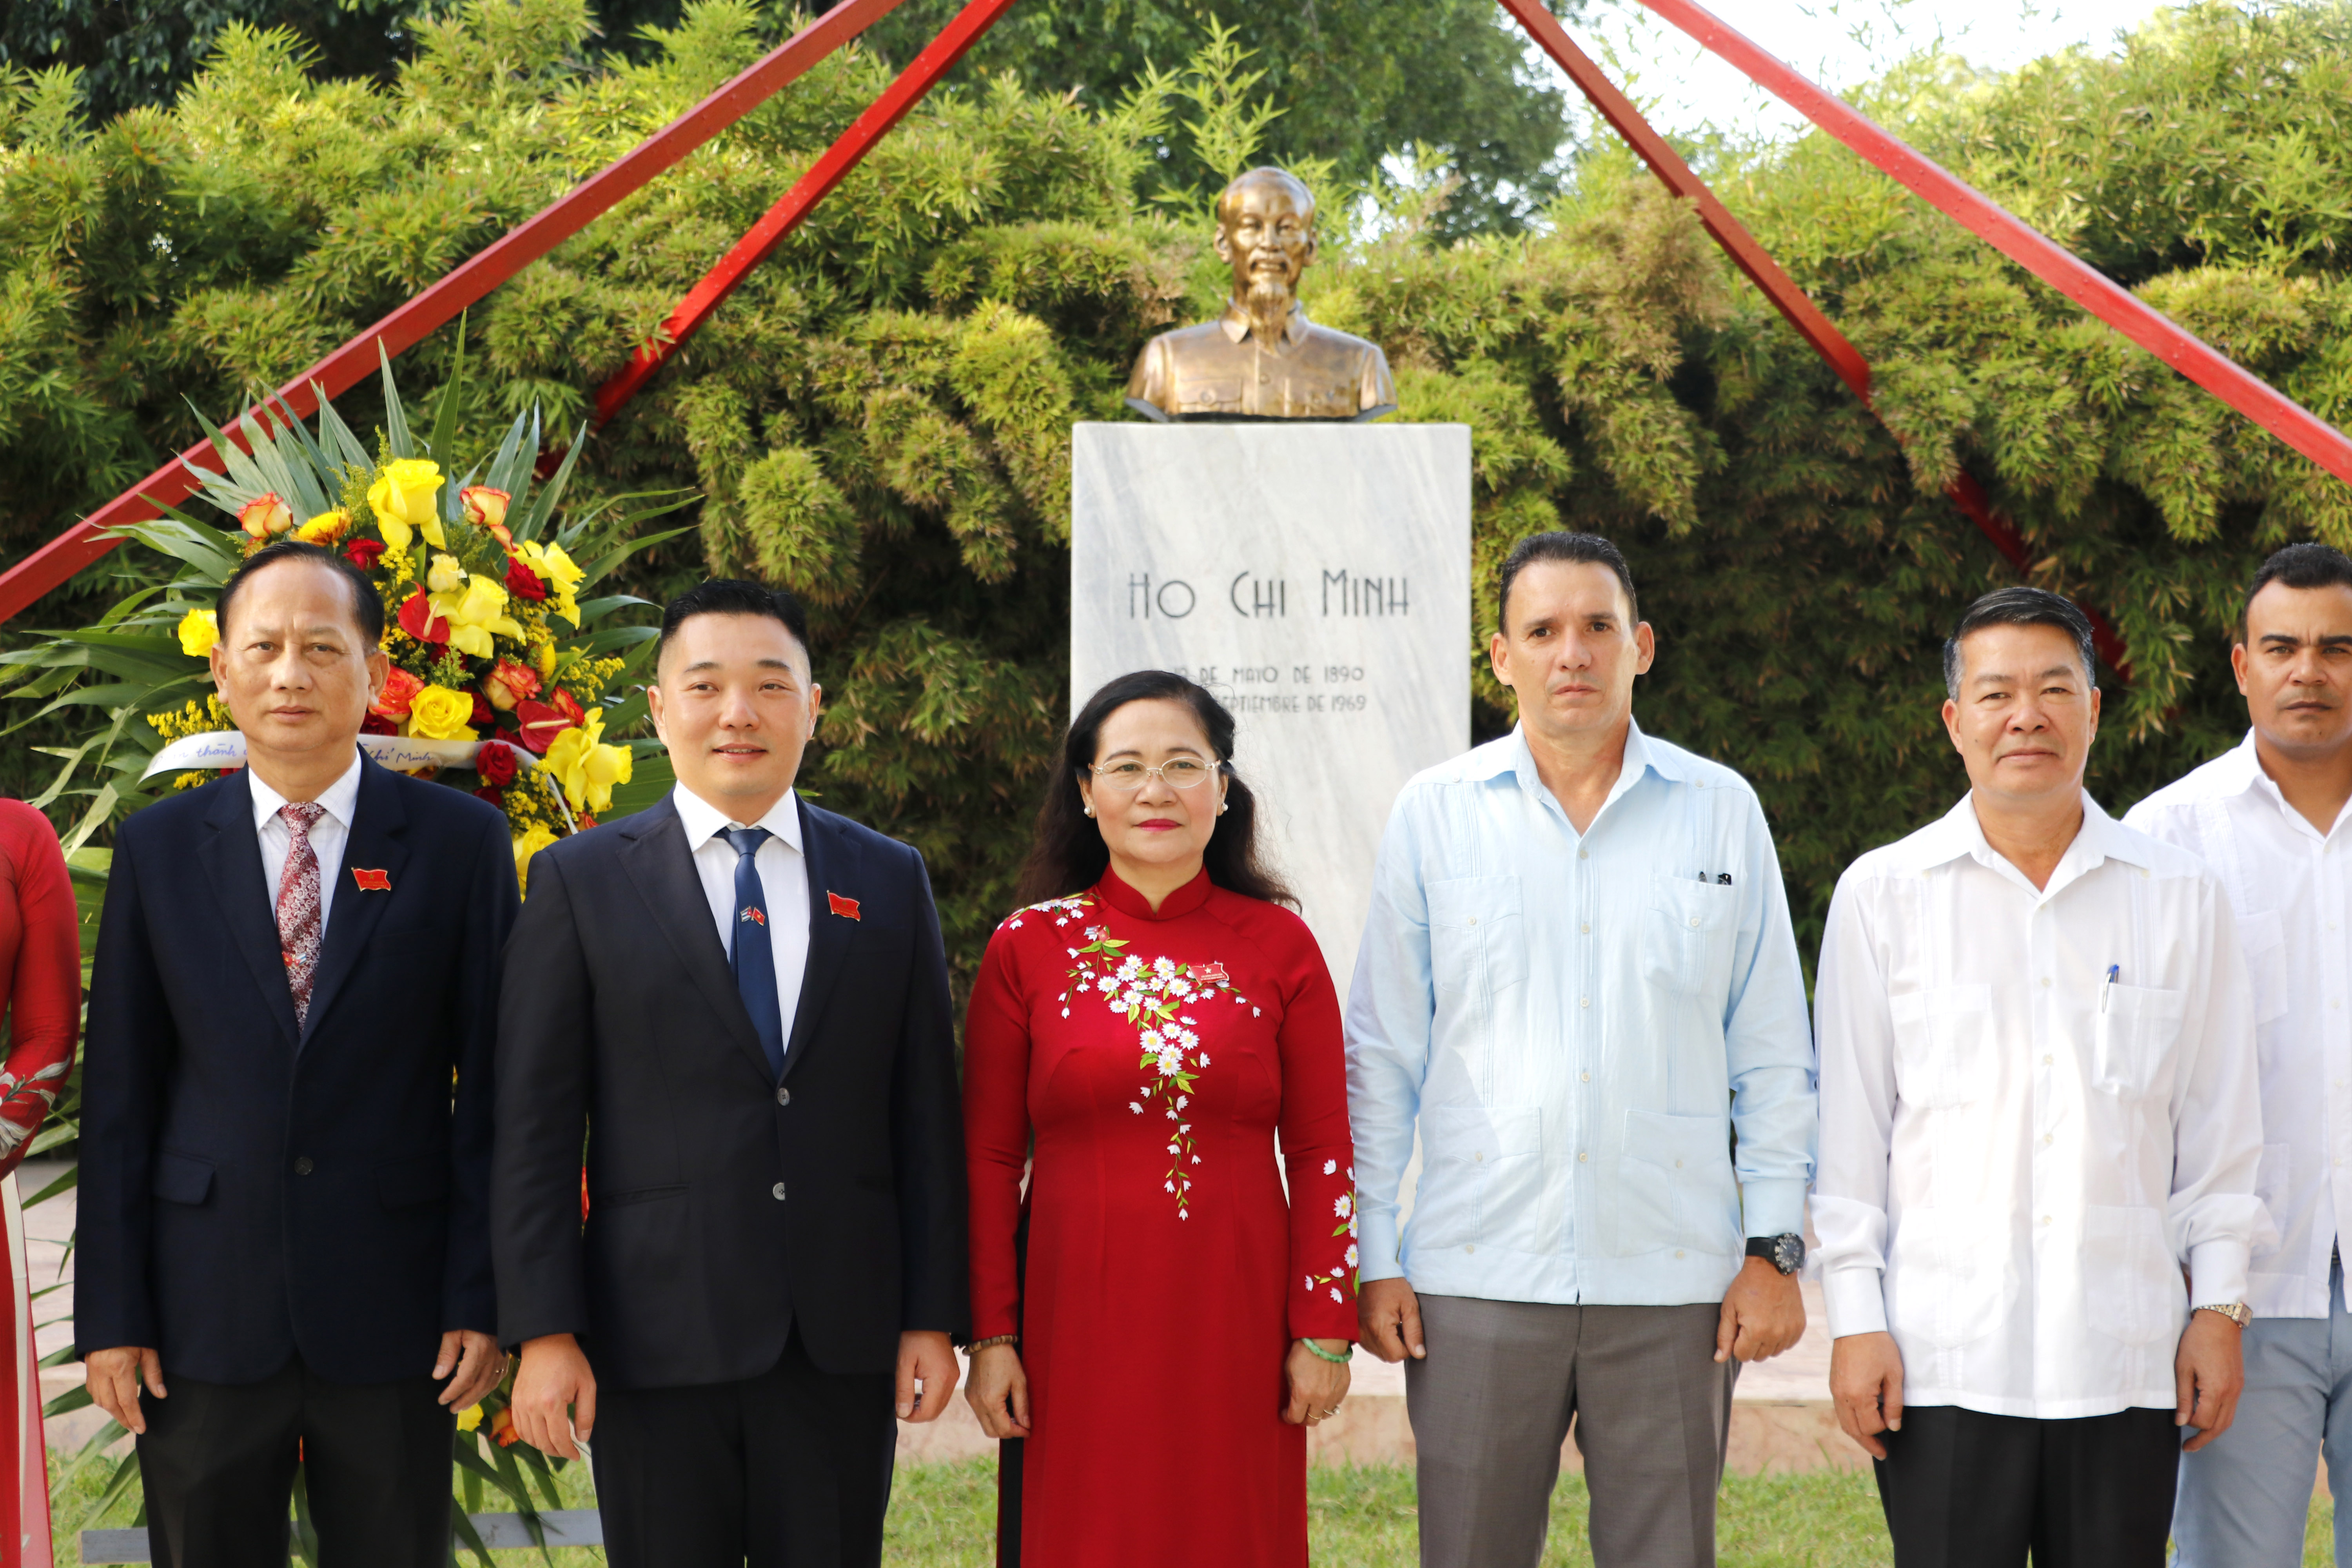 Chủ tịch HĐND TP. Hồ Chí Minh Nguyễn Thị Lệ cùng đoàn công tác bên Tượng đài Chủ tịch Hồ Chí Minh trong chuyến công tác tại Cuba (Ảnh: Ngô Bình).